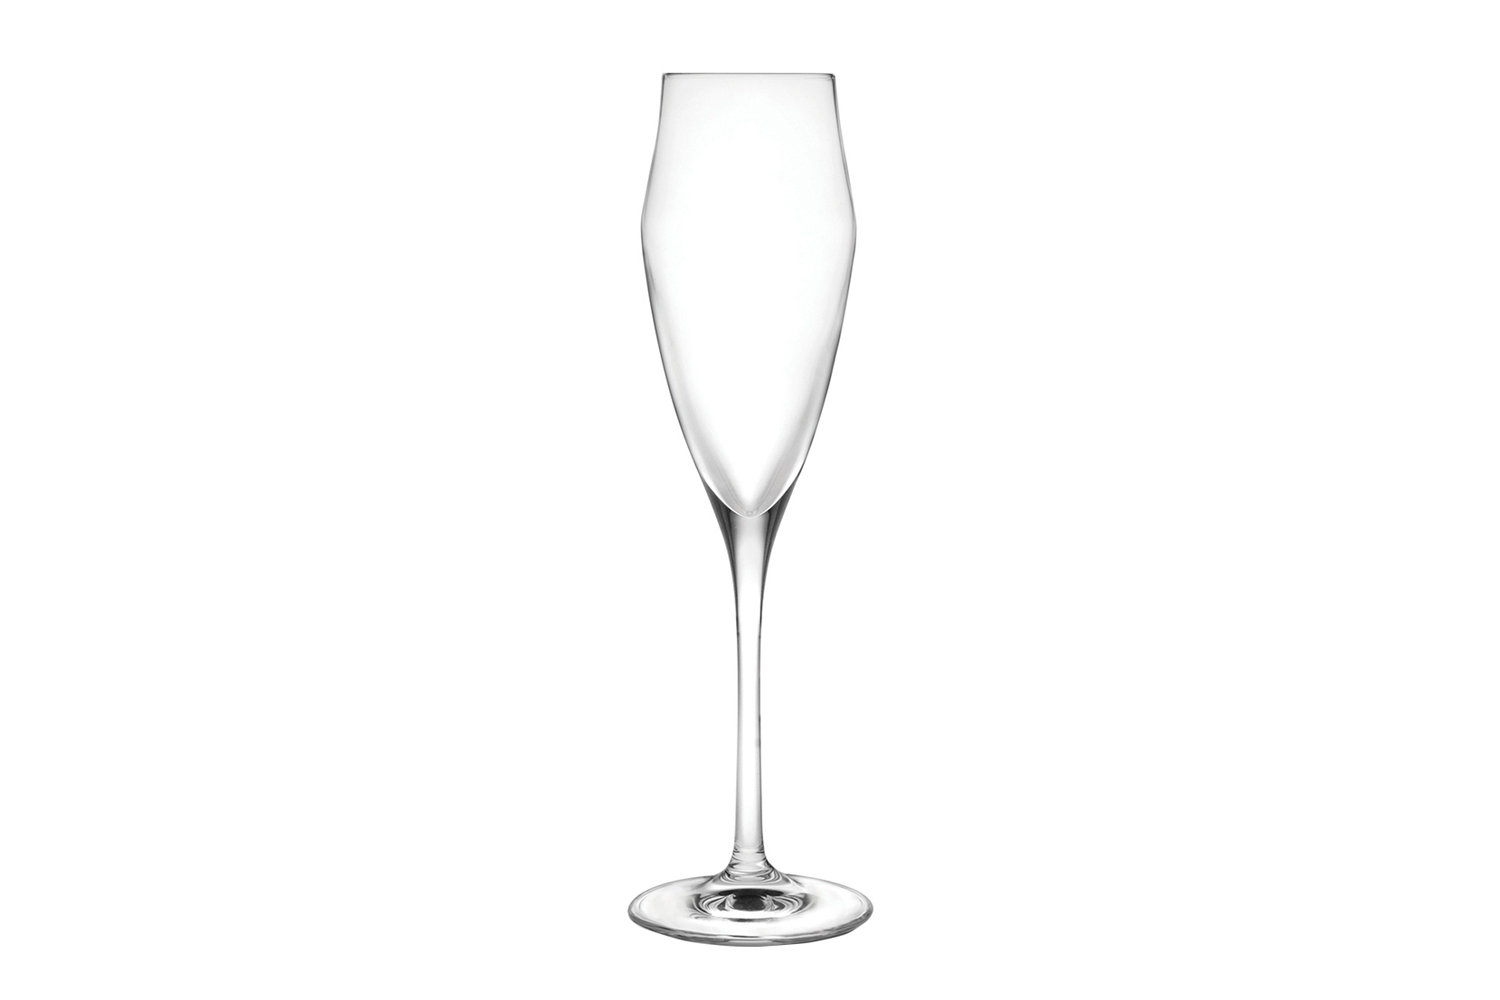 Флюте для шампанского. Riedel набор бокалов для шампанского Vitis Champagne Glass 0403/08 2 шт. 320 Мл. Набор фужеров RCR Calice Ego (6 шт) 180мл. RCR Cristalleria italiana бокалы. Бокал флюте RCR Ego 180 мл, Италия.